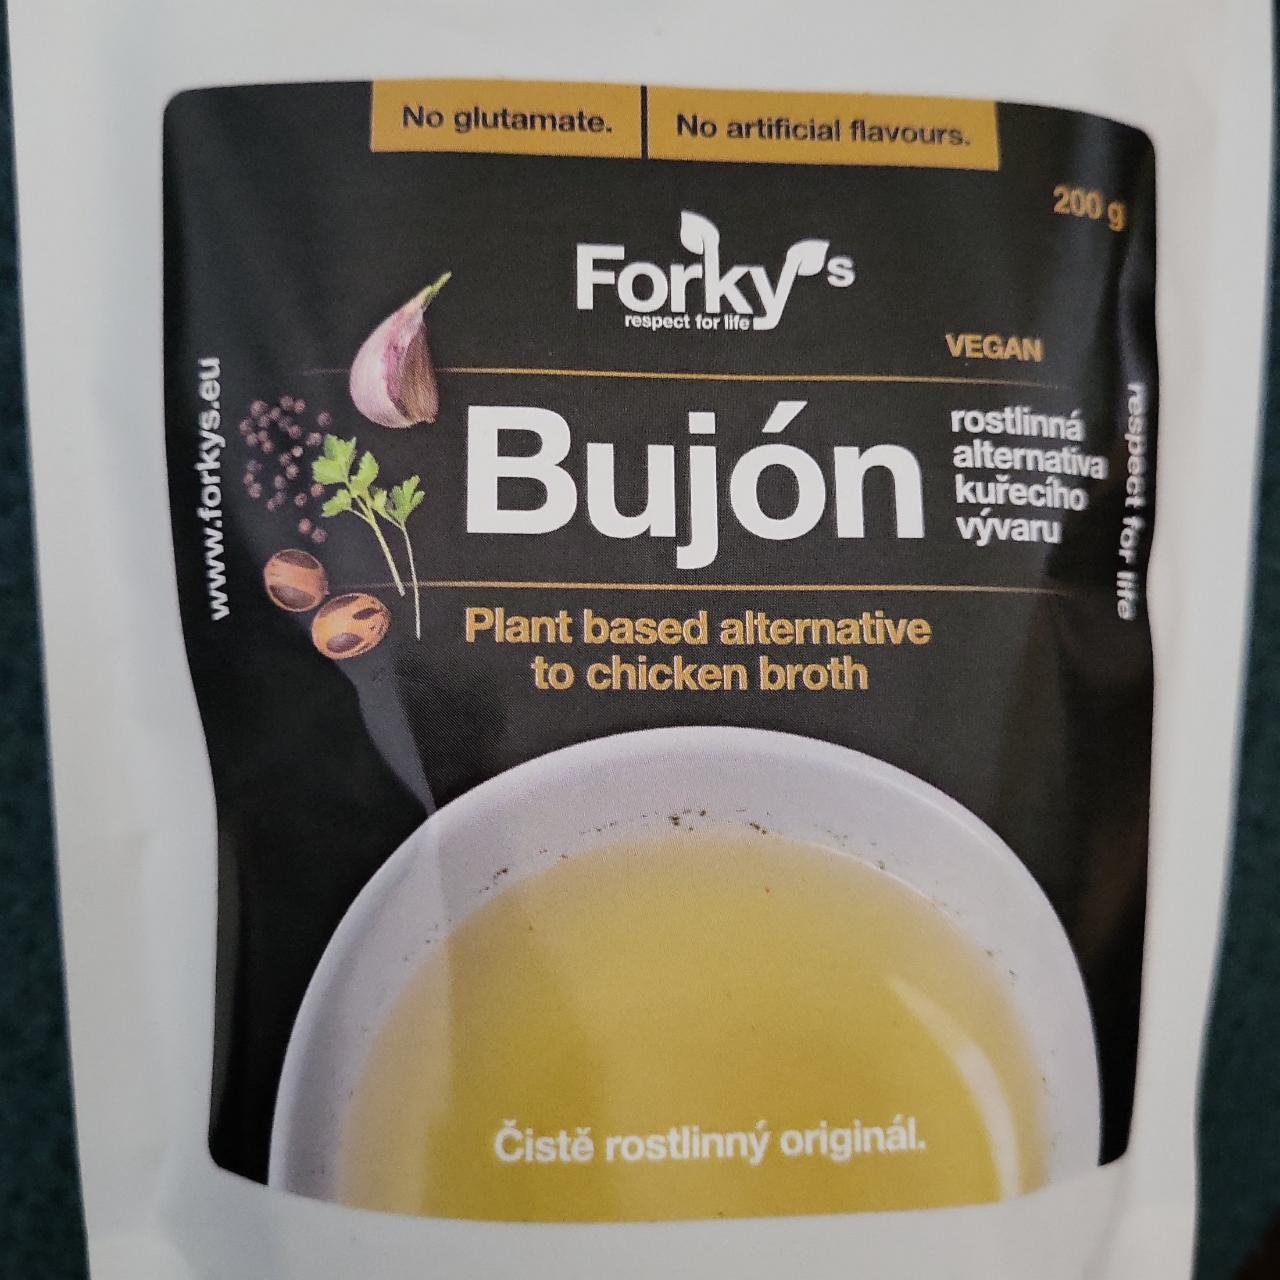 Fotografie - Bujón rostlinná alternativa kuřecího vývaru Forky’s